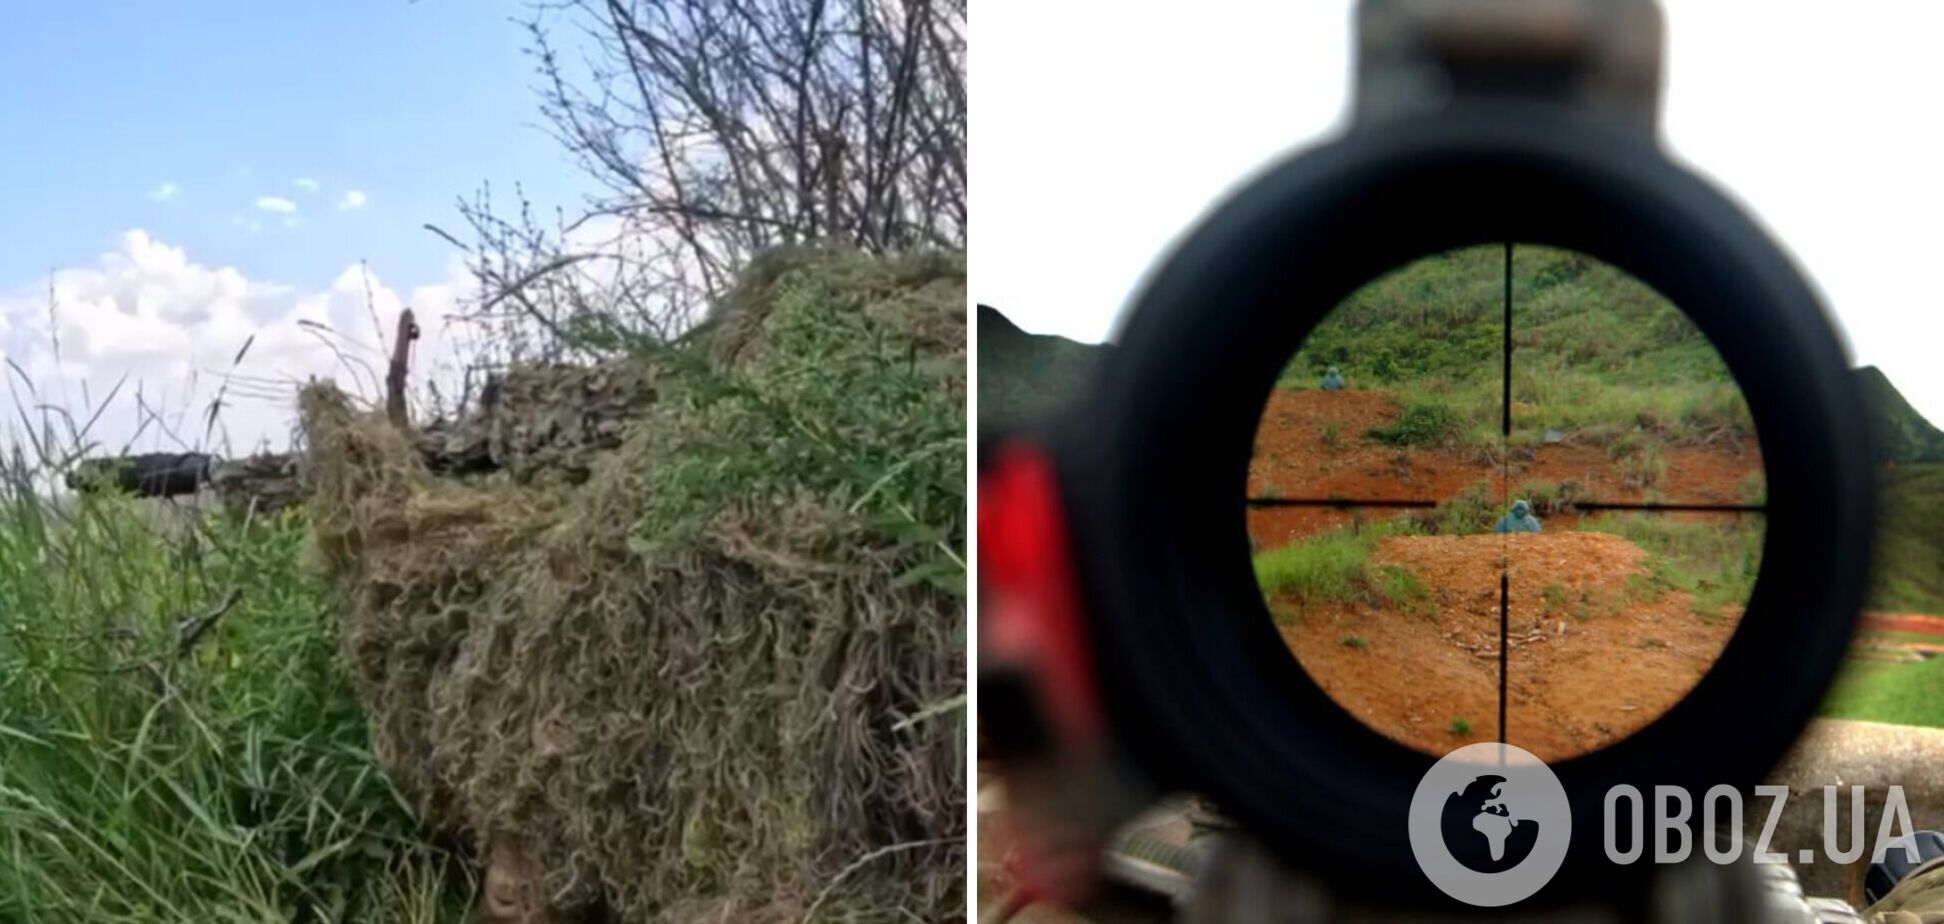 Ювелирная работа: снайпер ВСУ 'снял' вражеского корректировщика с расстояния почти 2 км. Видео